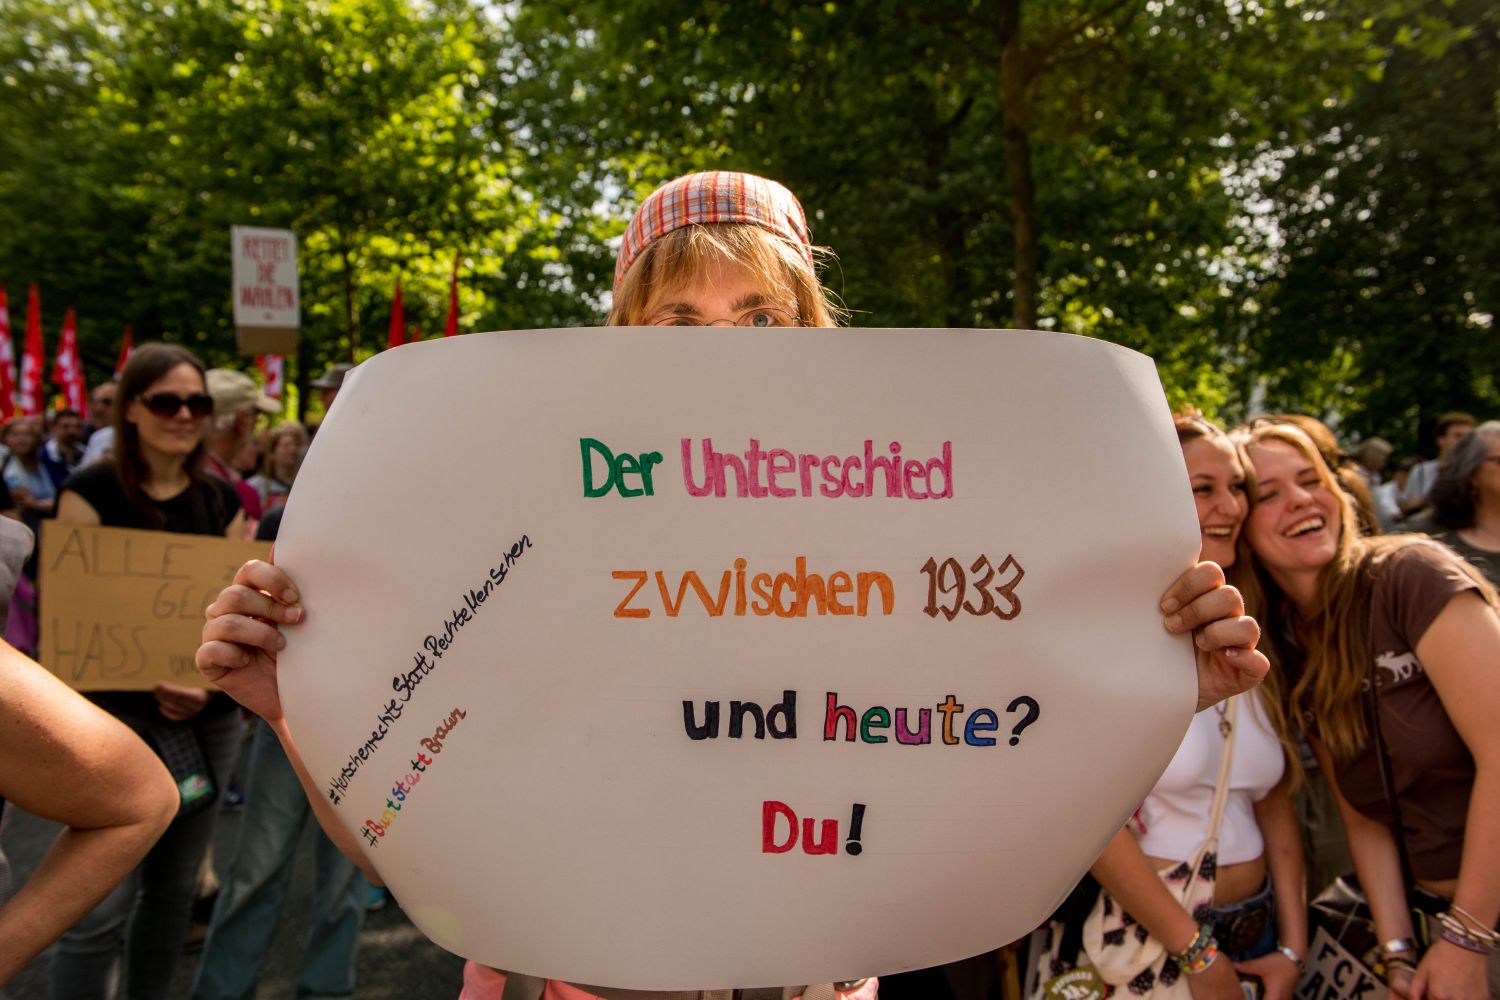 Laut - Bunt - Entschlossen! Protest gegen den Bundesparteitag der AfD in Essen <i>Bild Christian Schneider/R-mediabase</i> <br><a href=/confor2/?bld=82689&pst=82663&aid=615&dc=1008&i1=Christian%20Schneider/R-mediabase><strong>Downloadanfrage</strong></a>  